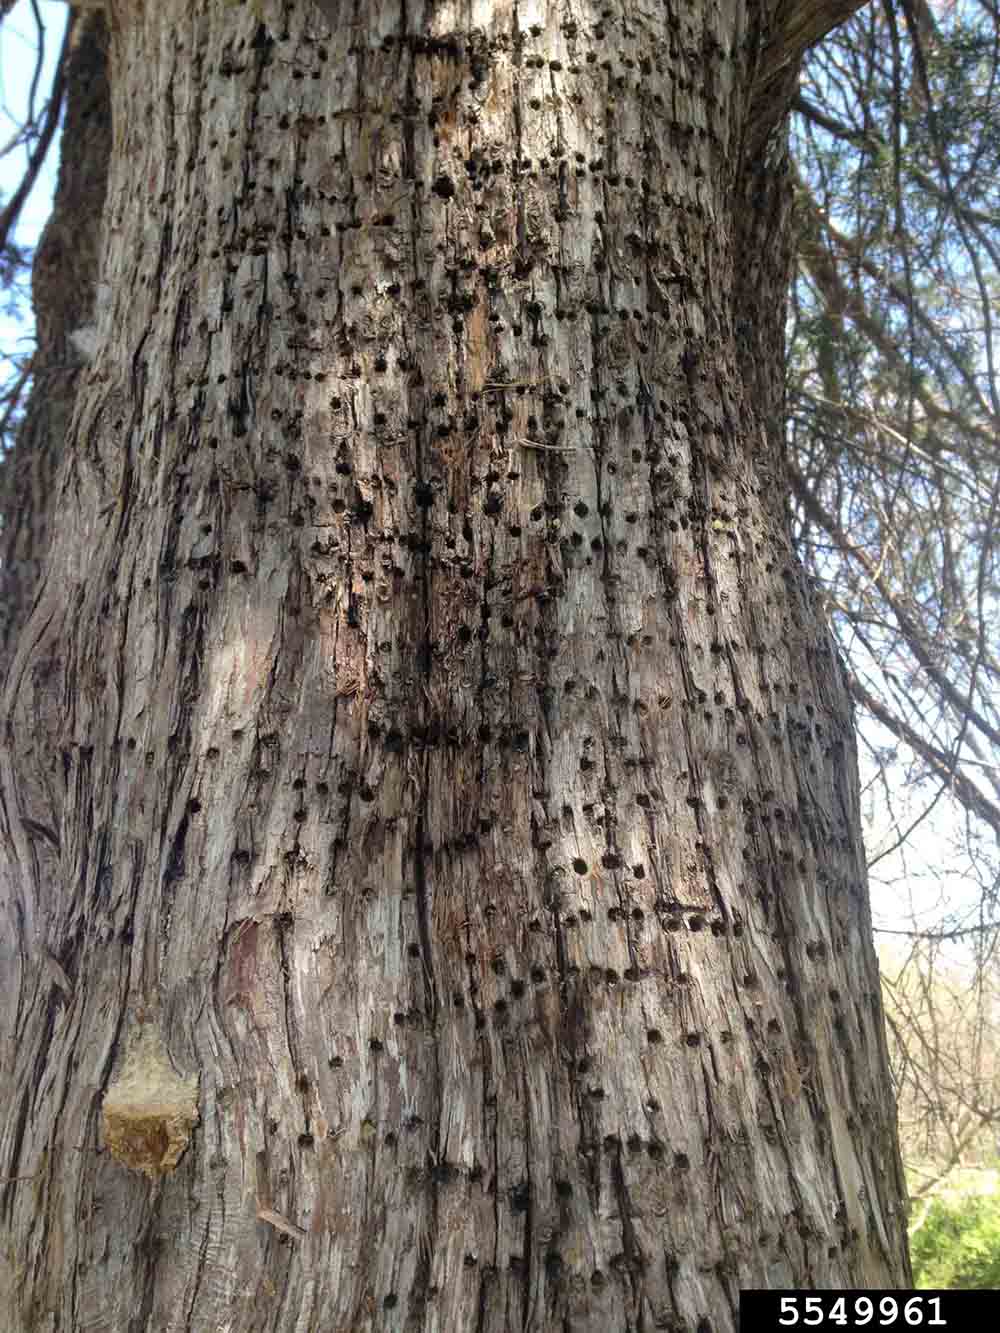 Eastern red cedar woodpecker damage